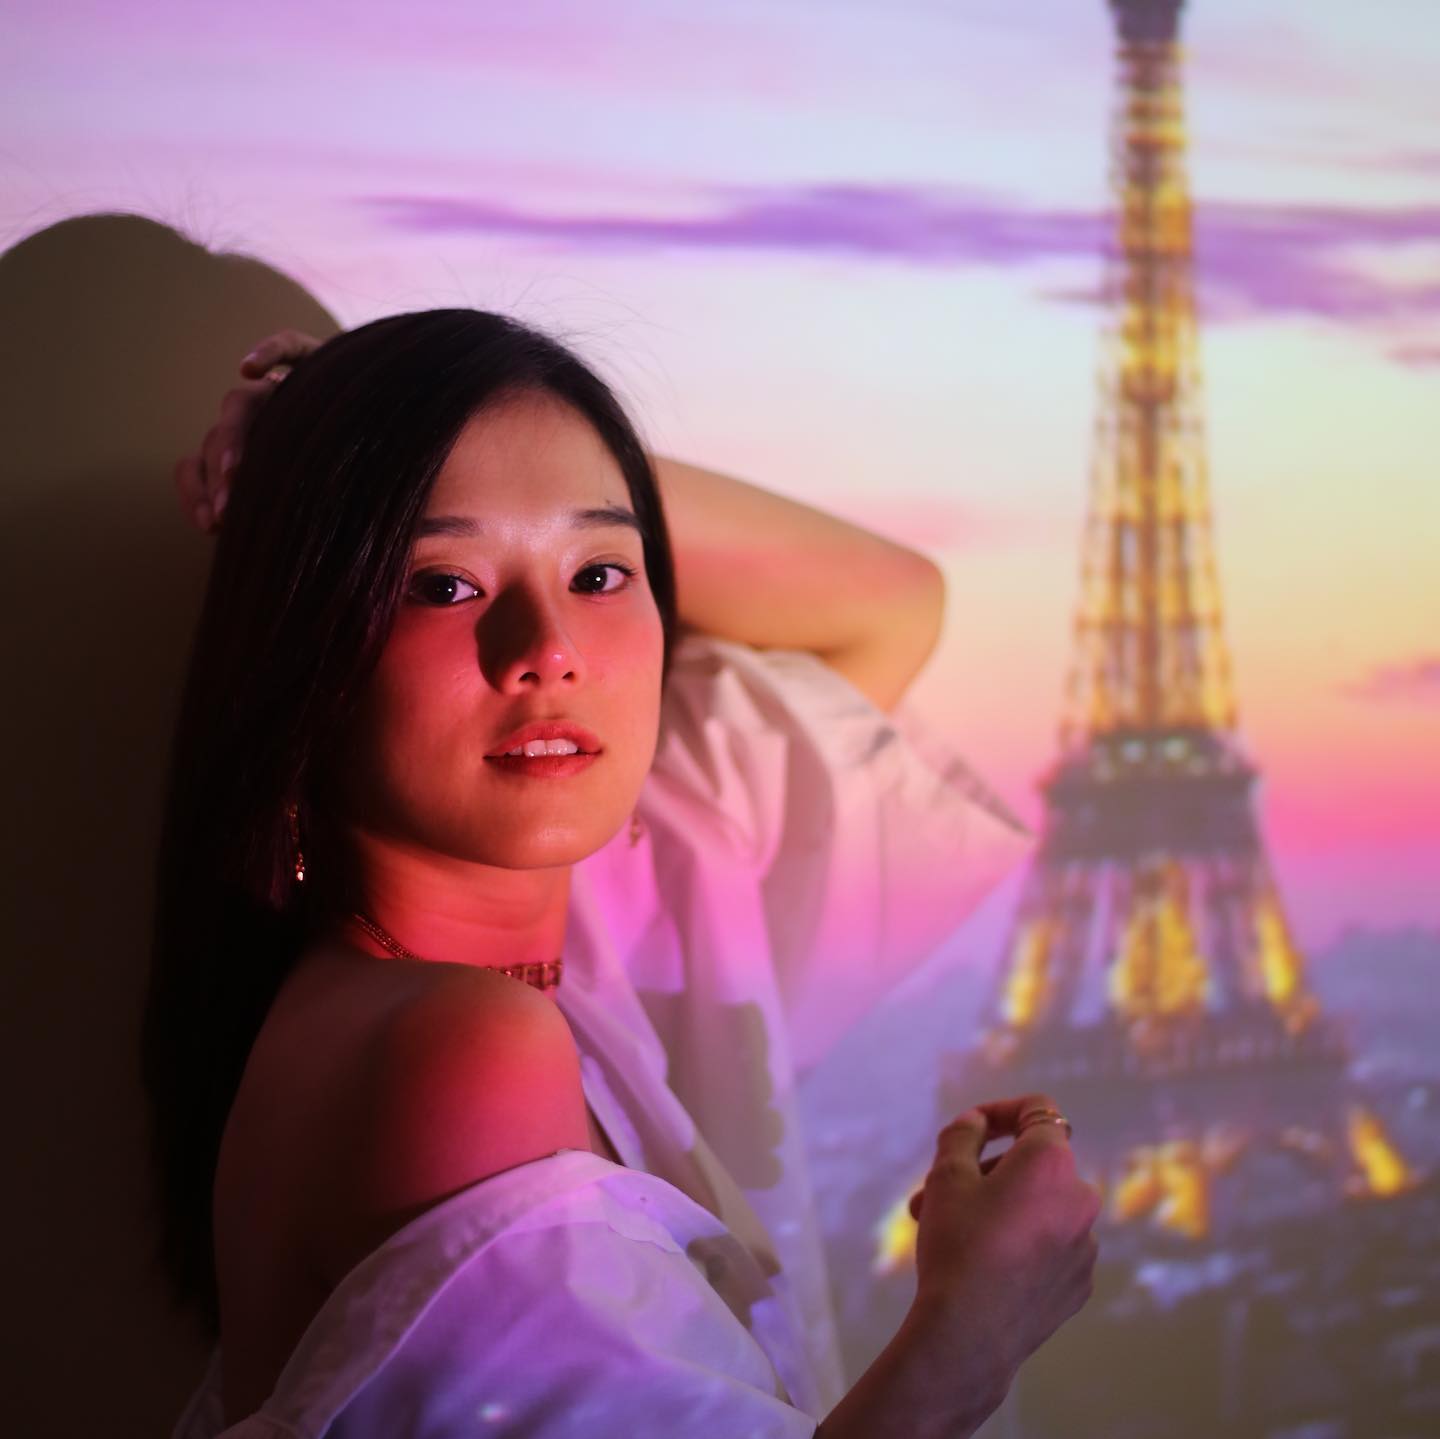 Hoàng Yến Chibi hài hước chia sẻ loạt ảnh đi du lịch Paris qua màn ảnh. Cô chia sẻ: 'Staycation - Paris. Mọi người theo Yến trên hành trình vòng quanh thế giới nhé. Điểm đầu tiên là nước Pháp xinh đẹp'.